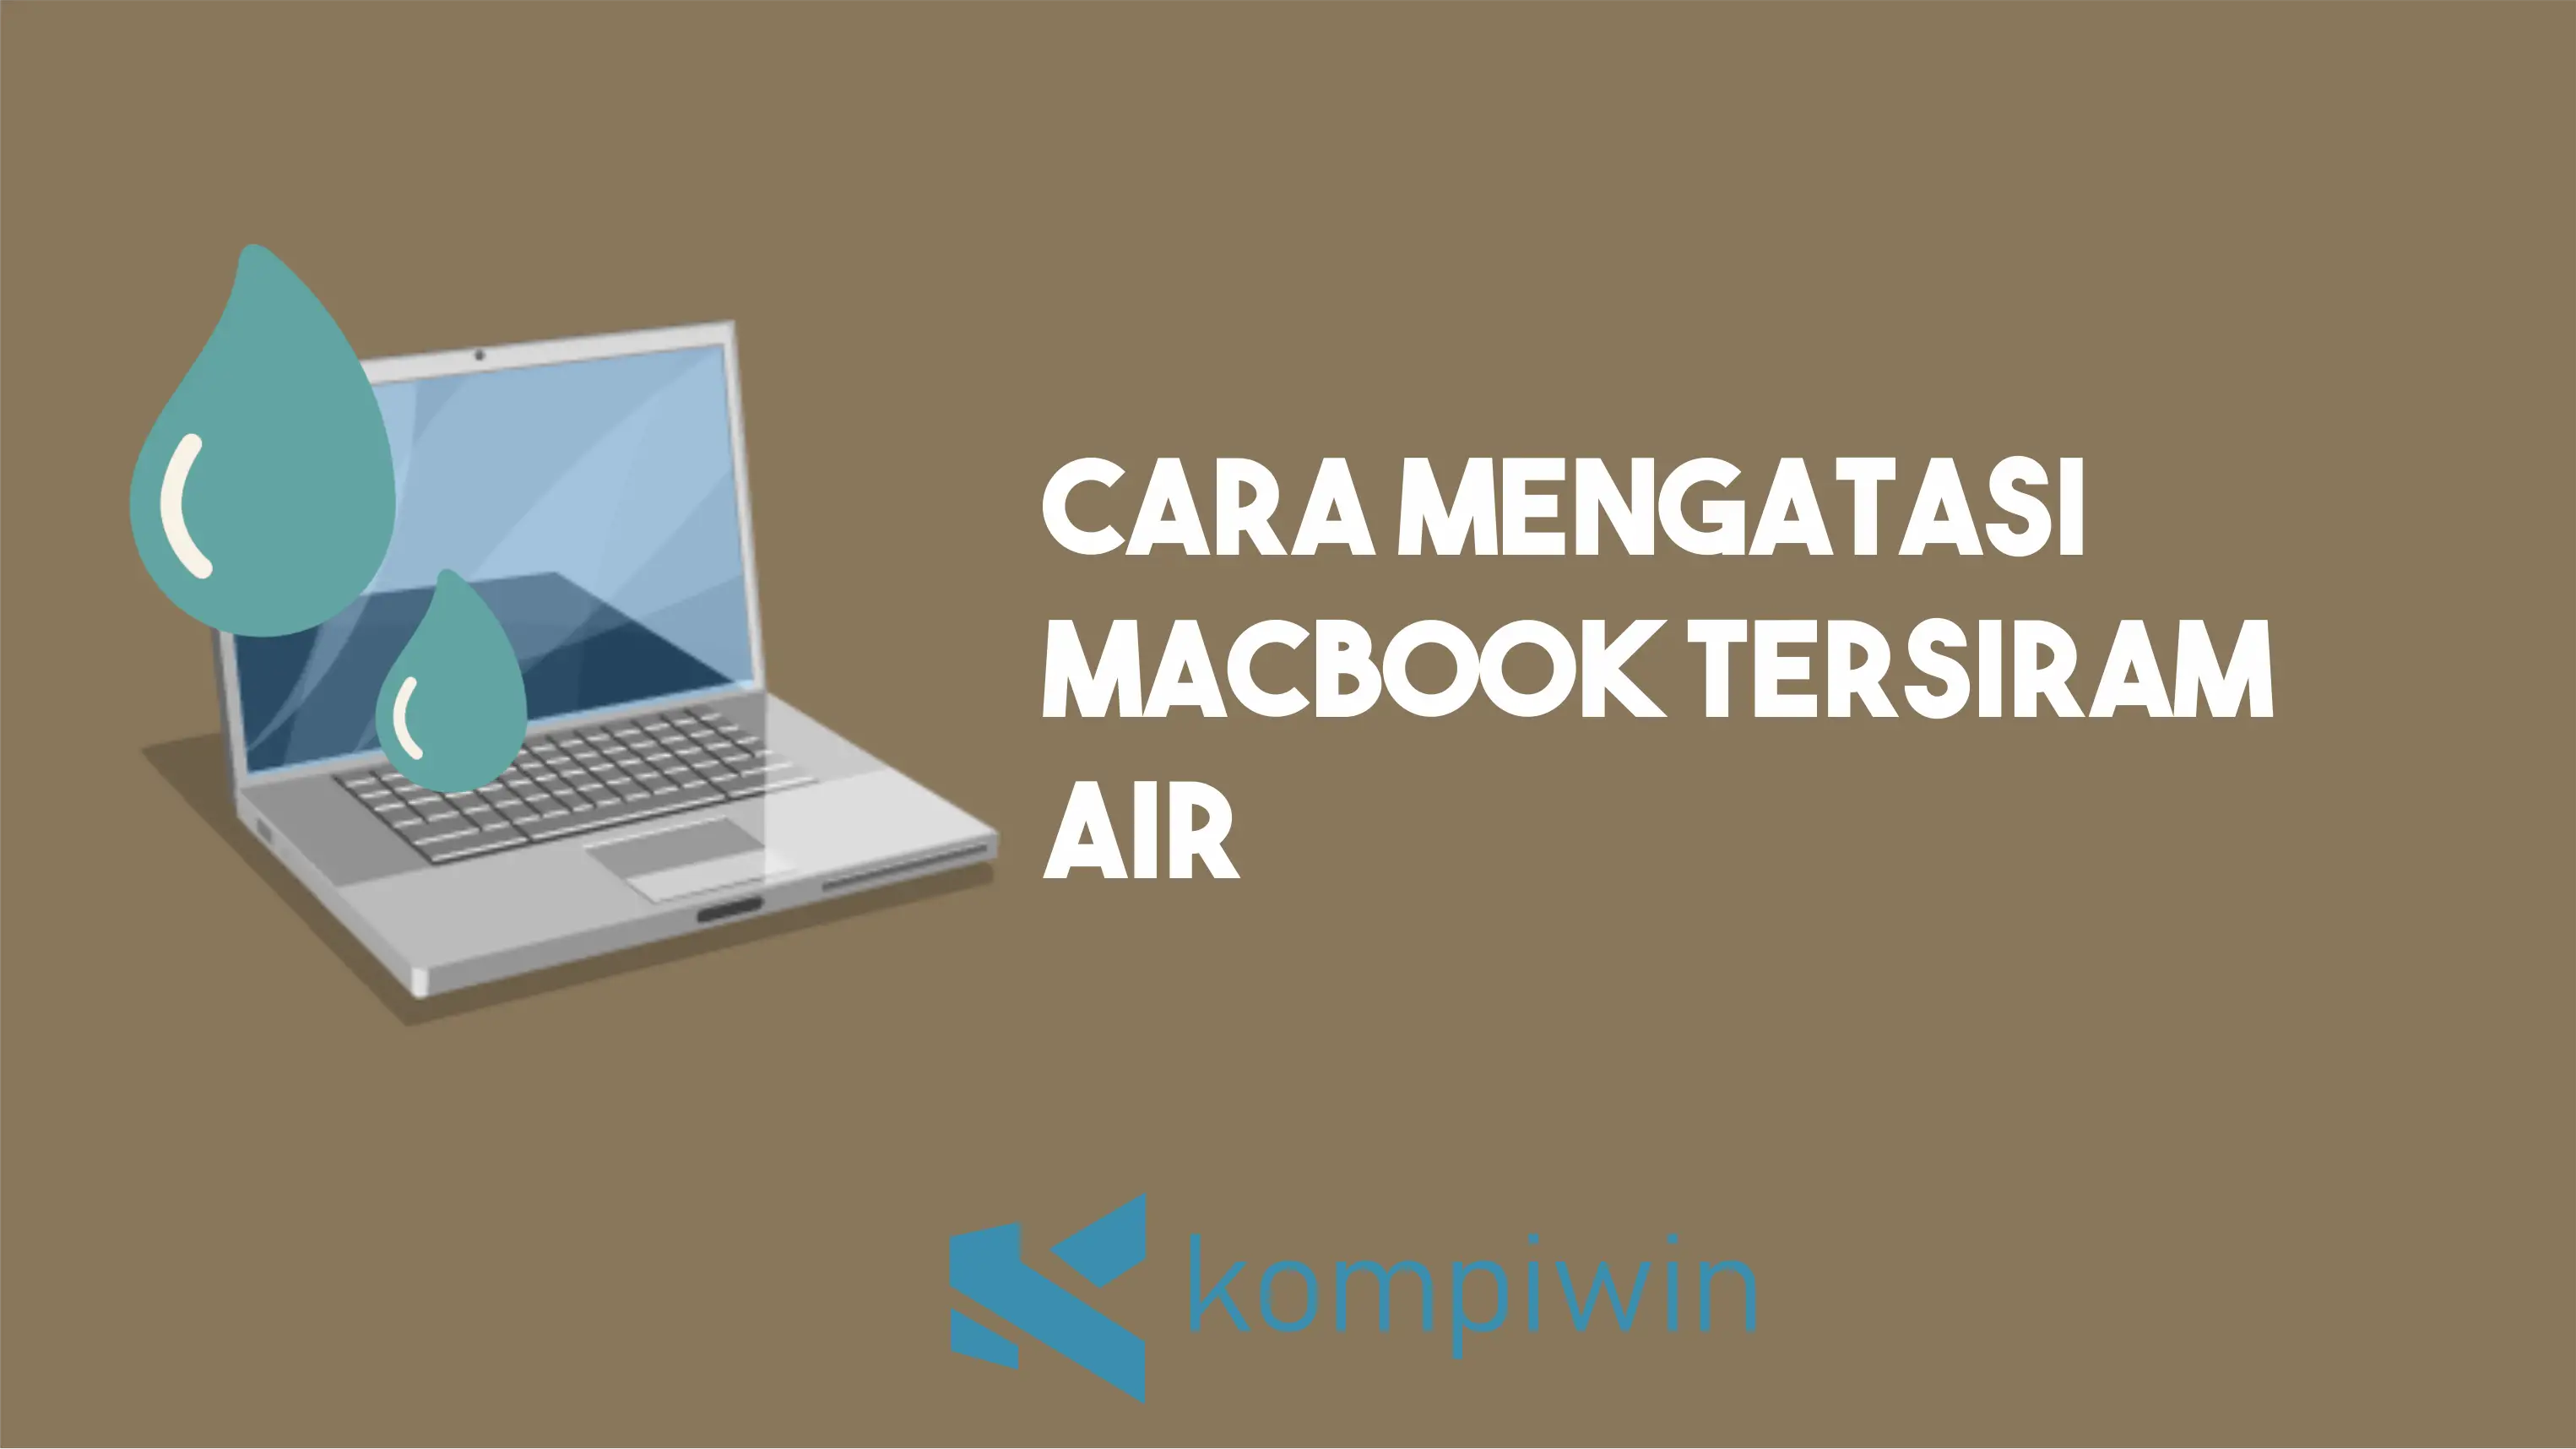 Cara Mengatasi Macbook Tersiram Air 1